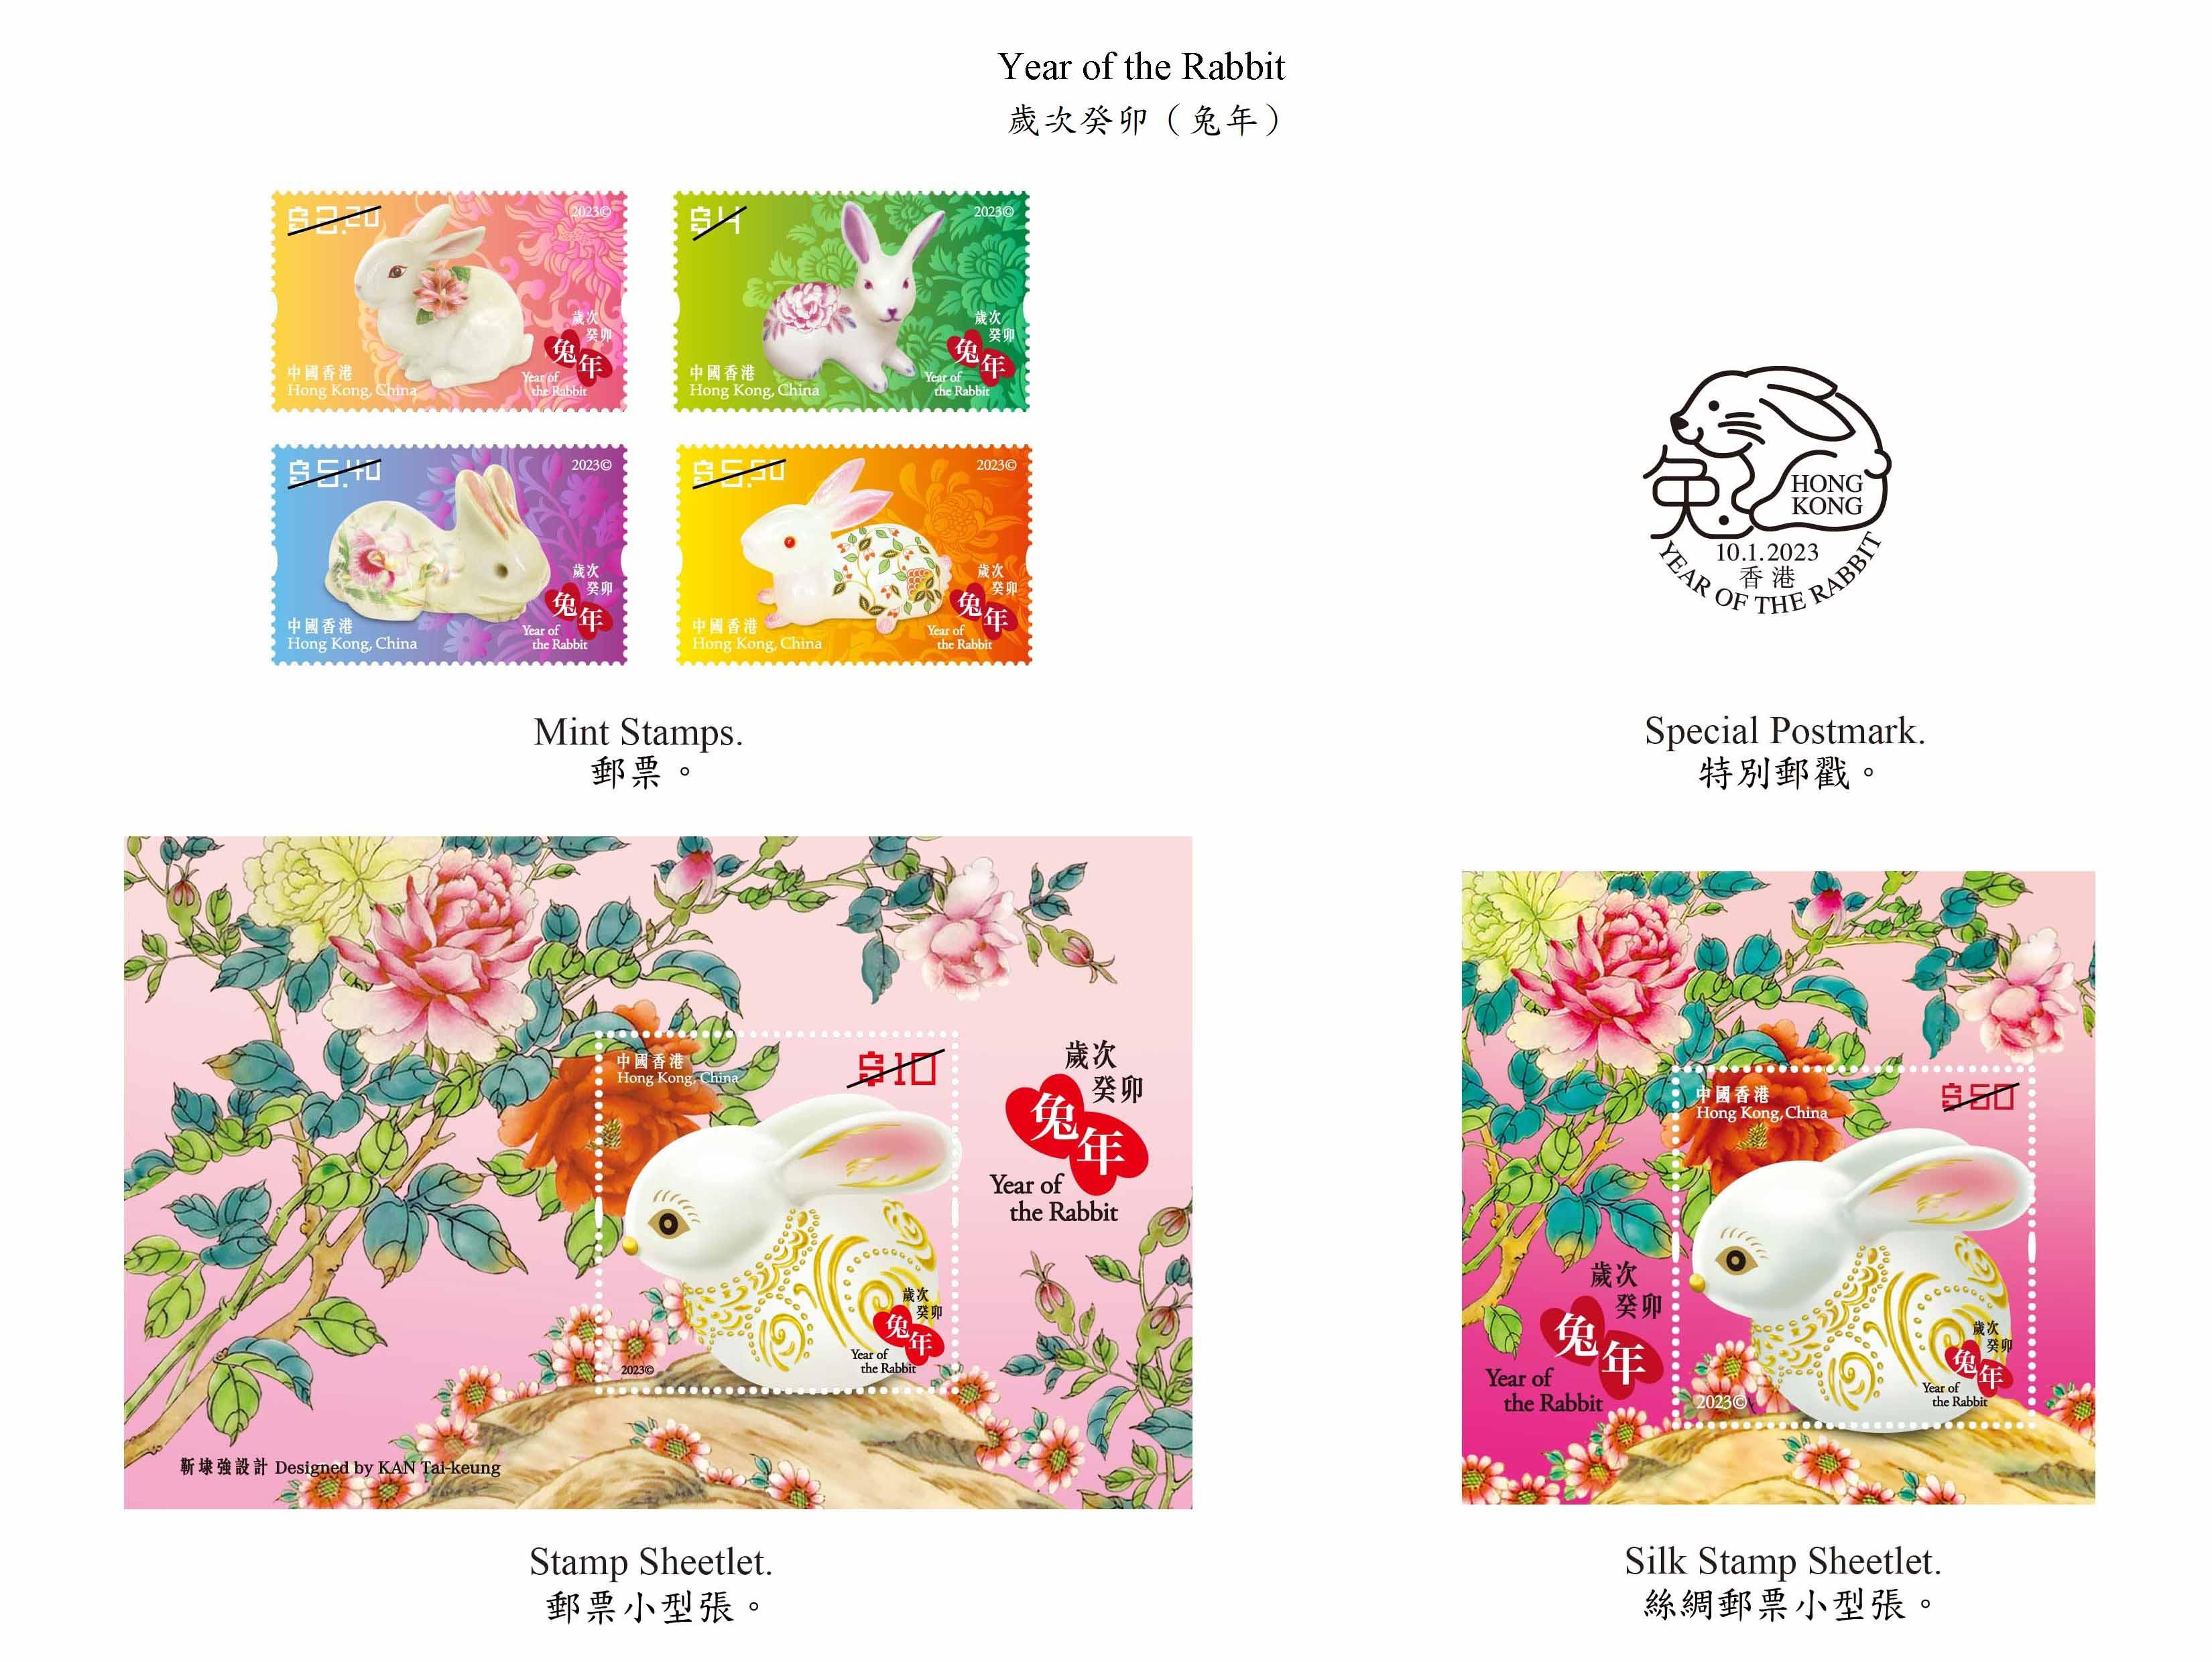 香港邮政二○二三年一月十日（星期二）发行以「岁次癸卯（兔年）」为题的特别邮票及相关集邮品。图示邮票、邮票小型张和特别邮戳。
